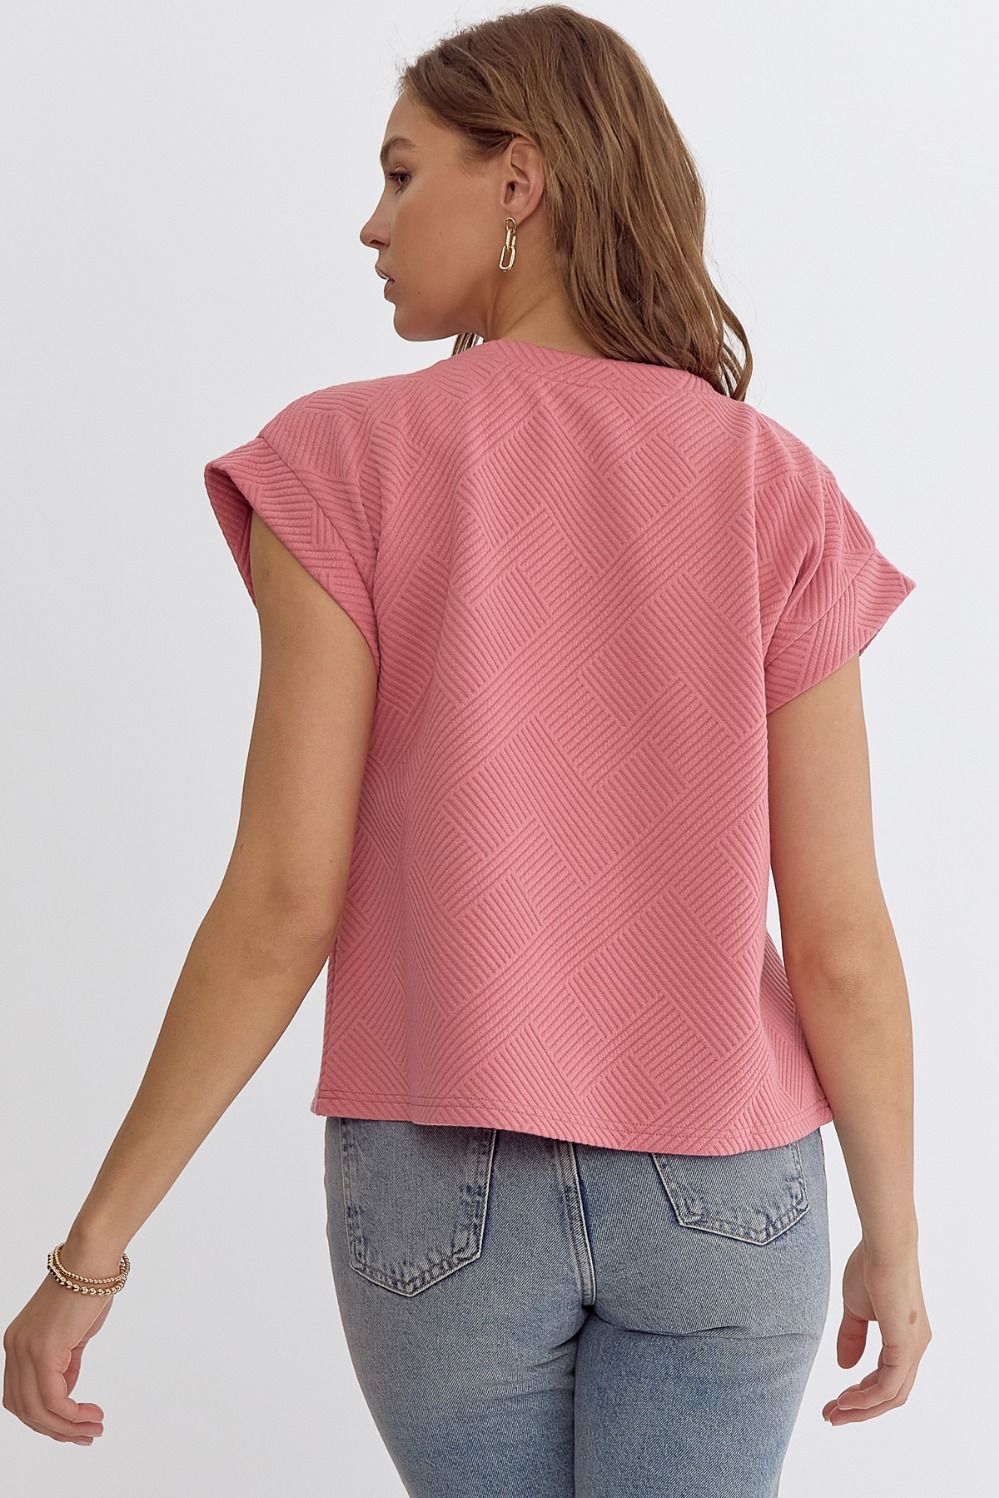 Take Care Coral Pink Loungewear Set